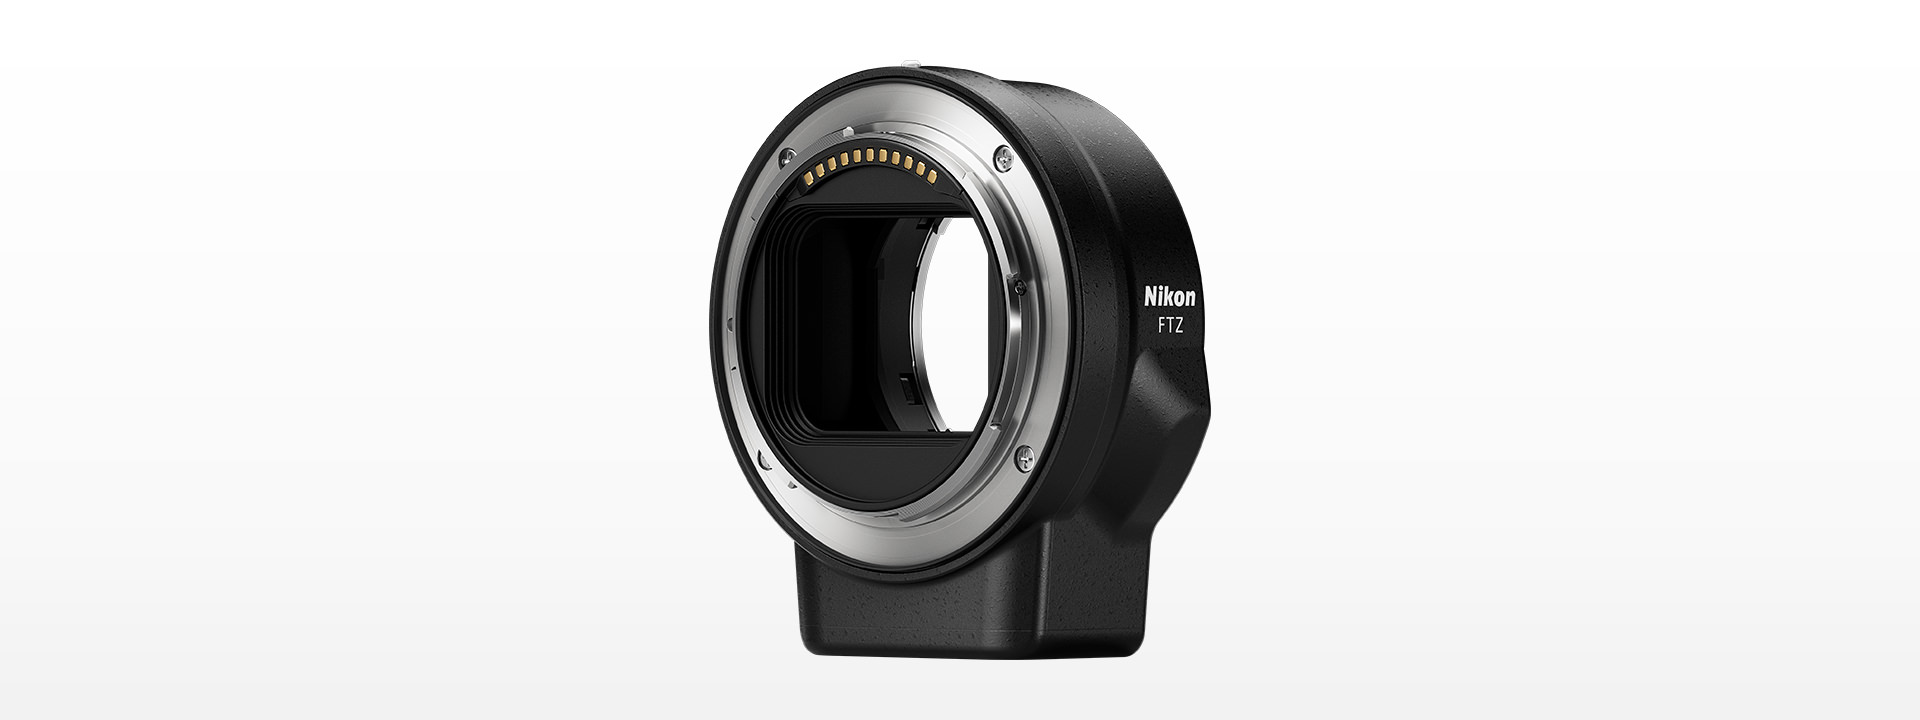 約70mm×80mm質量【新品未使用】Nikon FTZ マウントアダプター